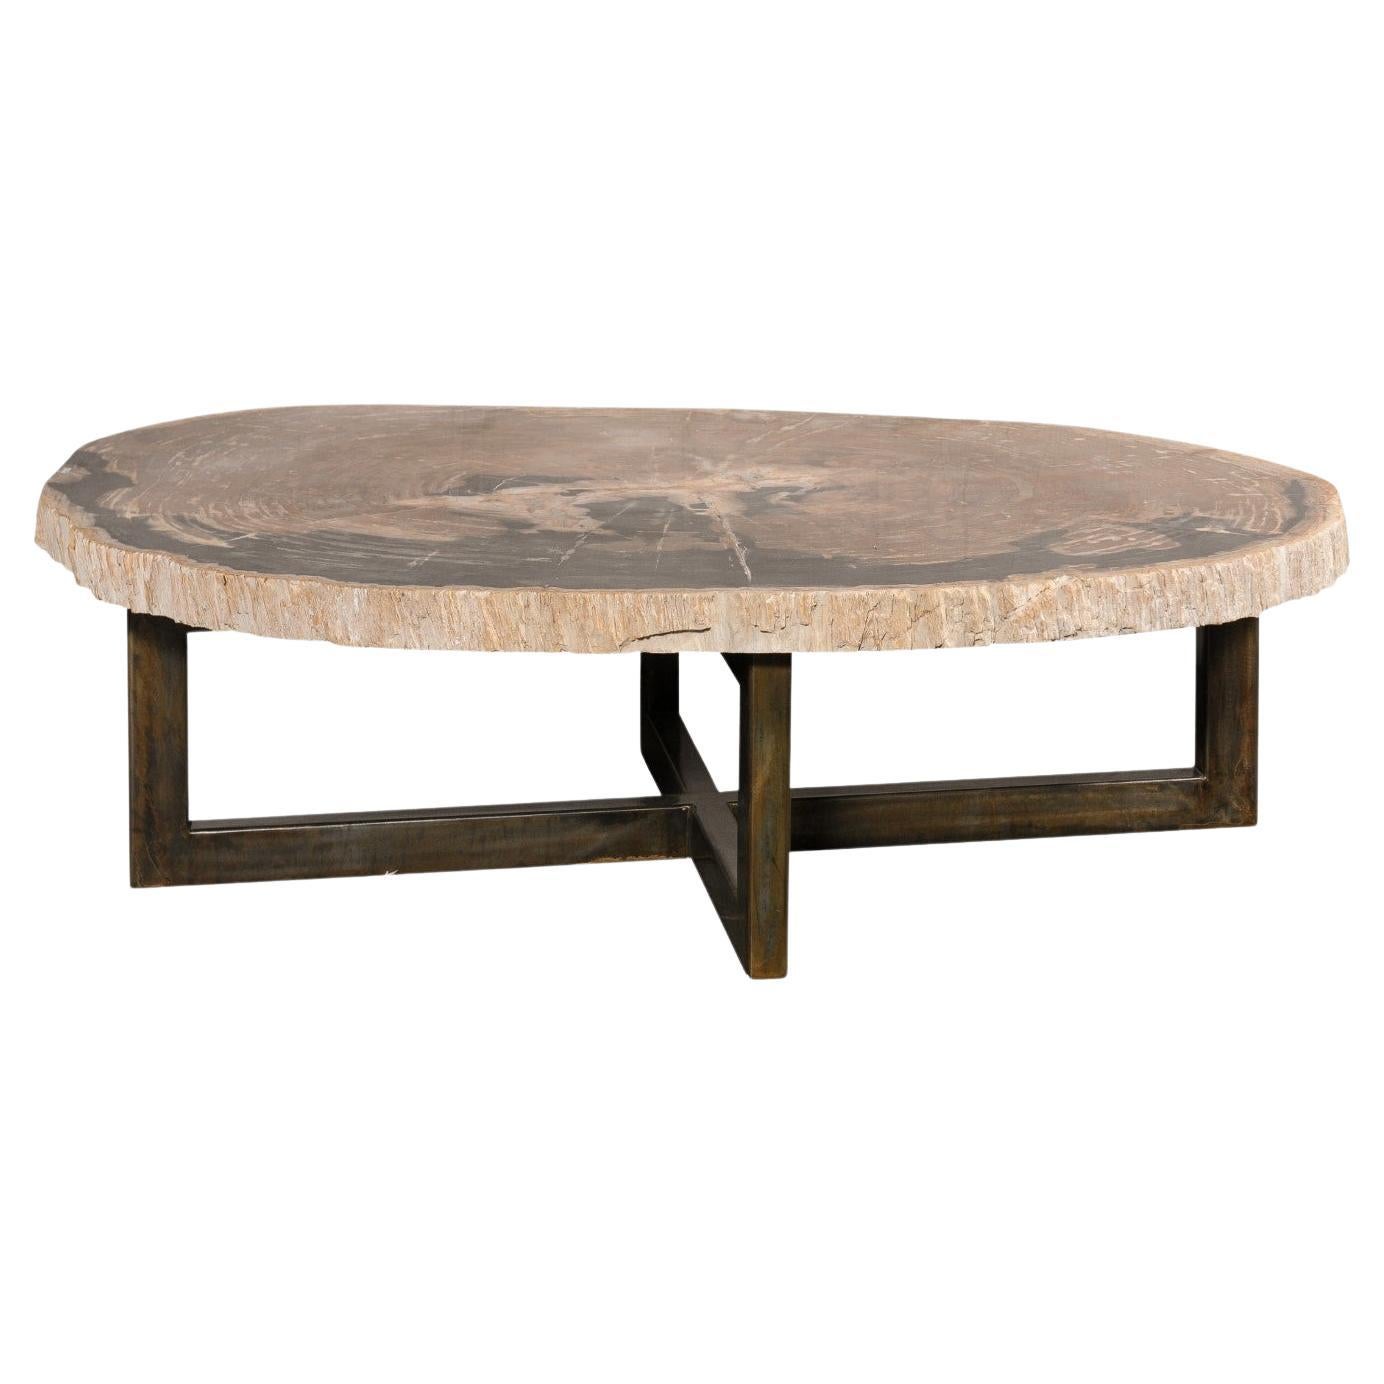 Grande table basse en bois pétrifié à bords vifs, environ